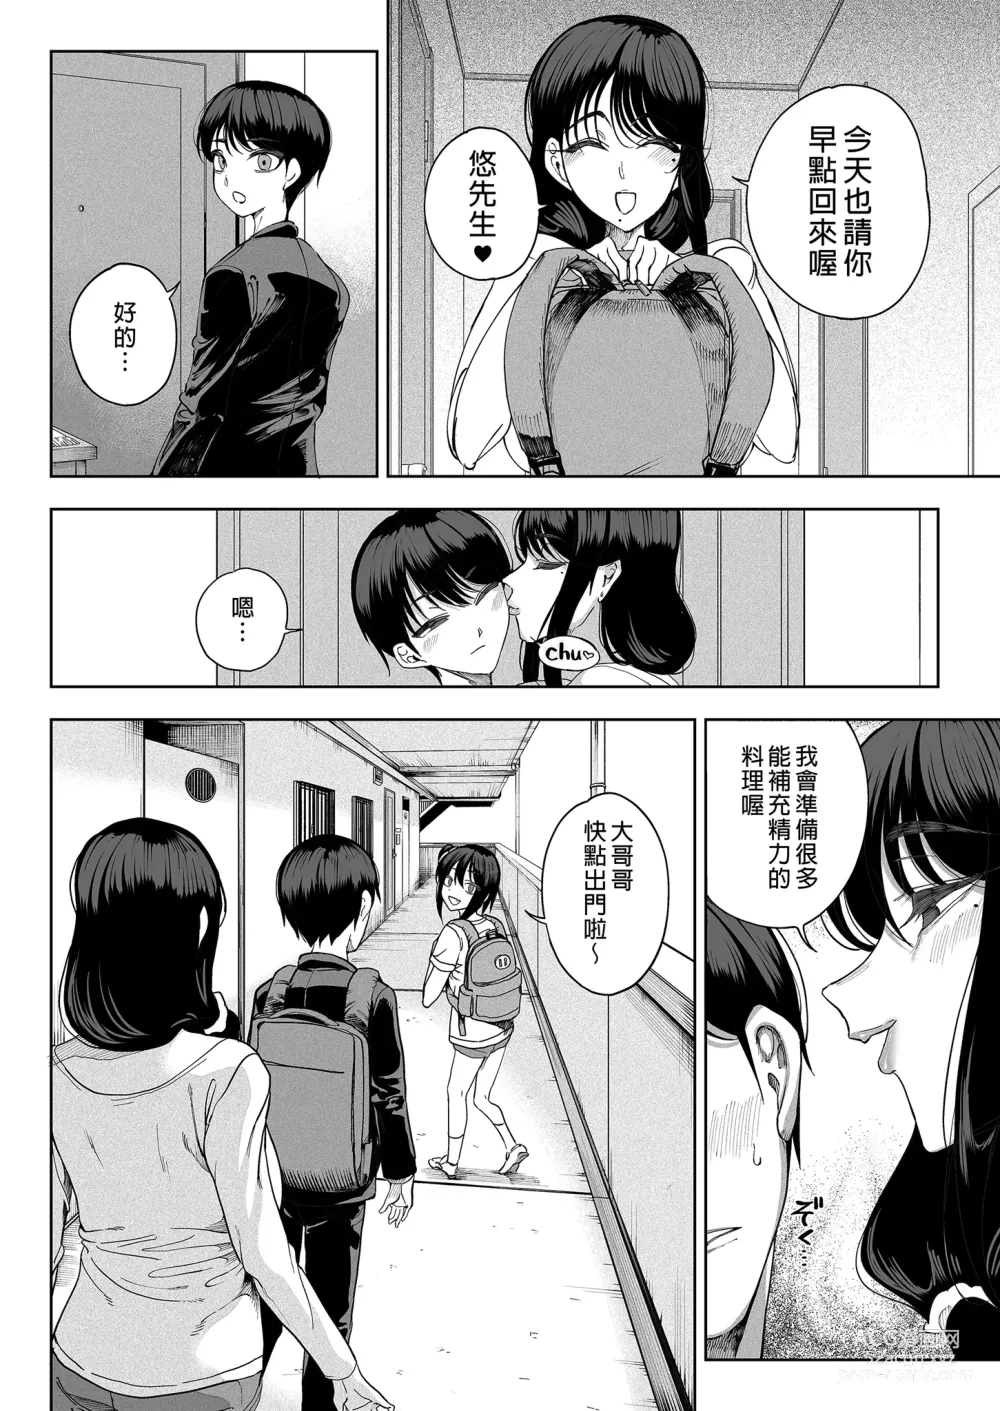 Page 76 of doujinshi Inma Soukutsu Boku no Rinjin Wainma Oyako